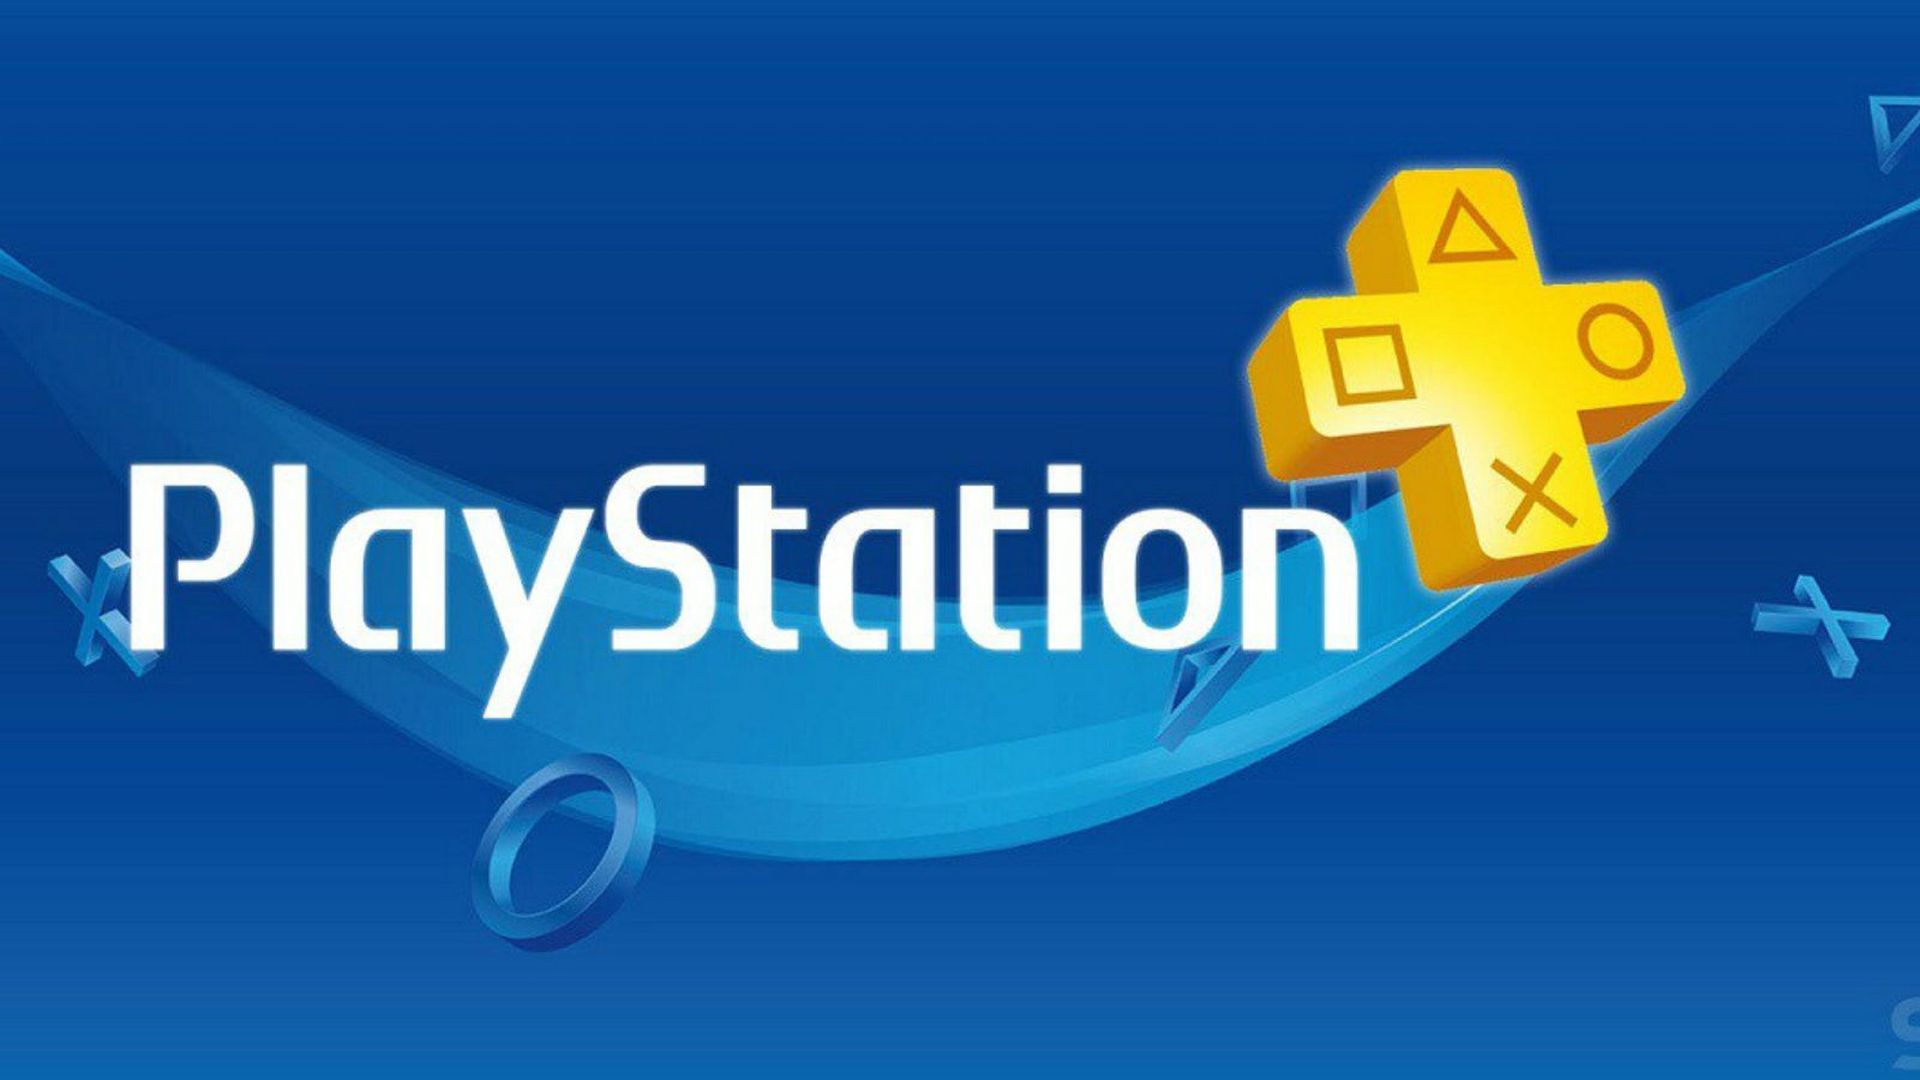 PlayStation Plus games for October: Hell Let Loose, PGA Tour 2K21, Mortal  Kombat X – PlayStation.Blog